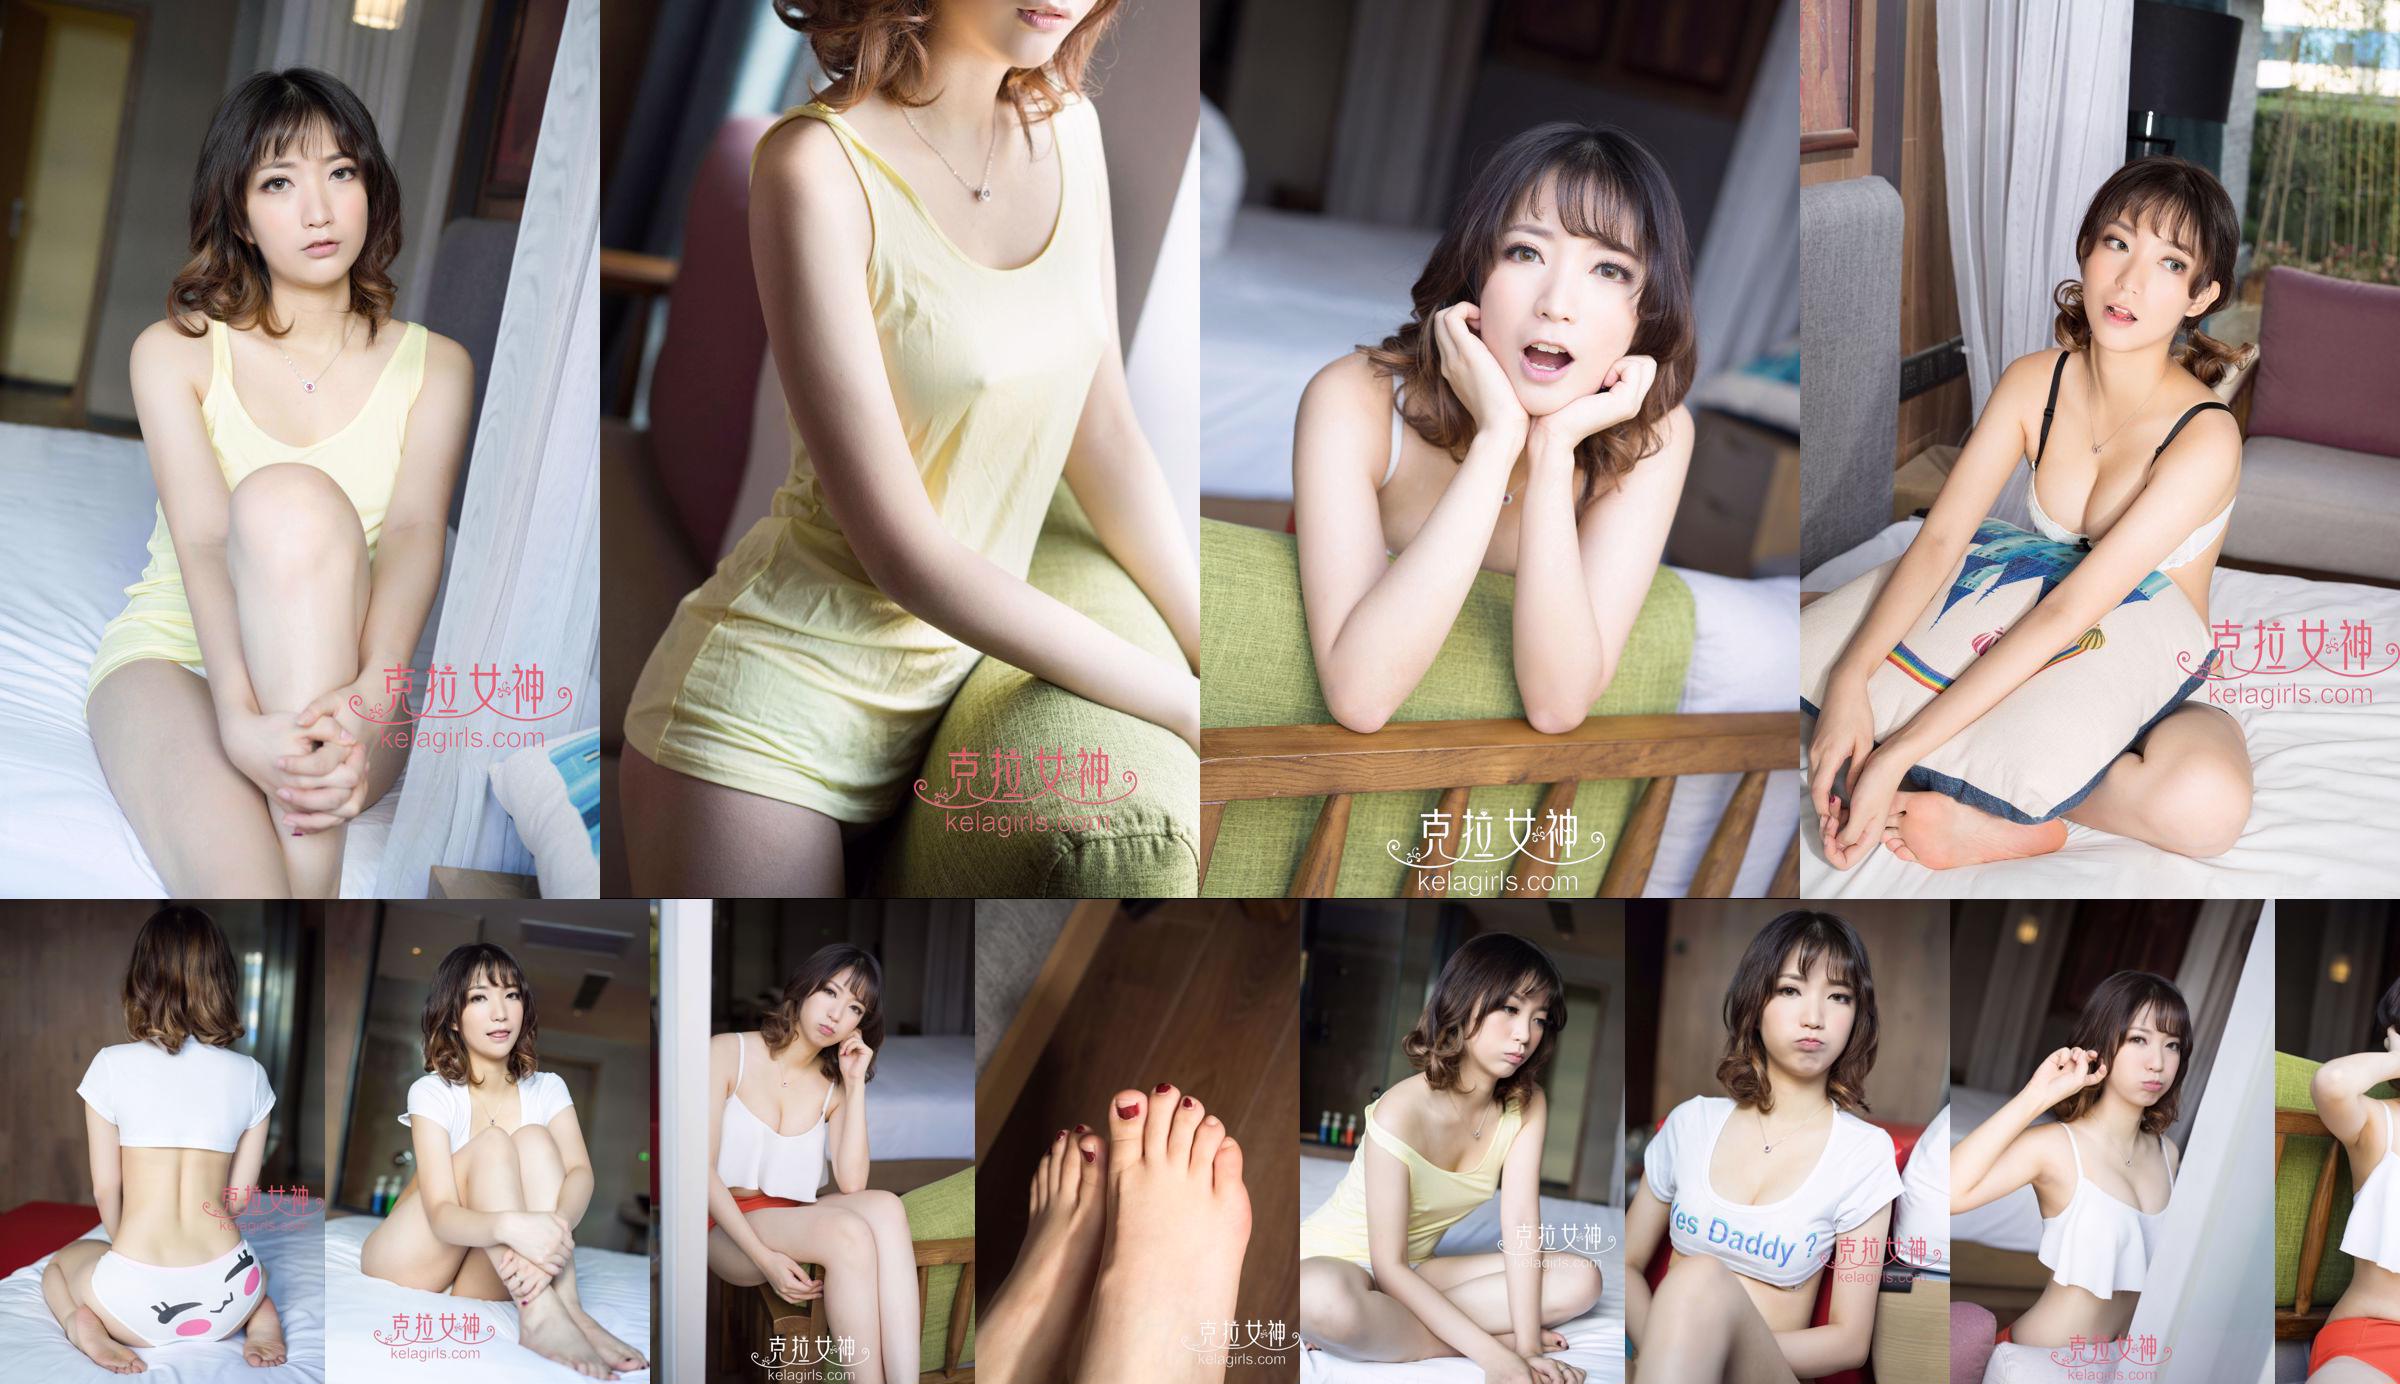 [丽柜Ligui] Network Beauty Model Nana No.54f8af Page 5